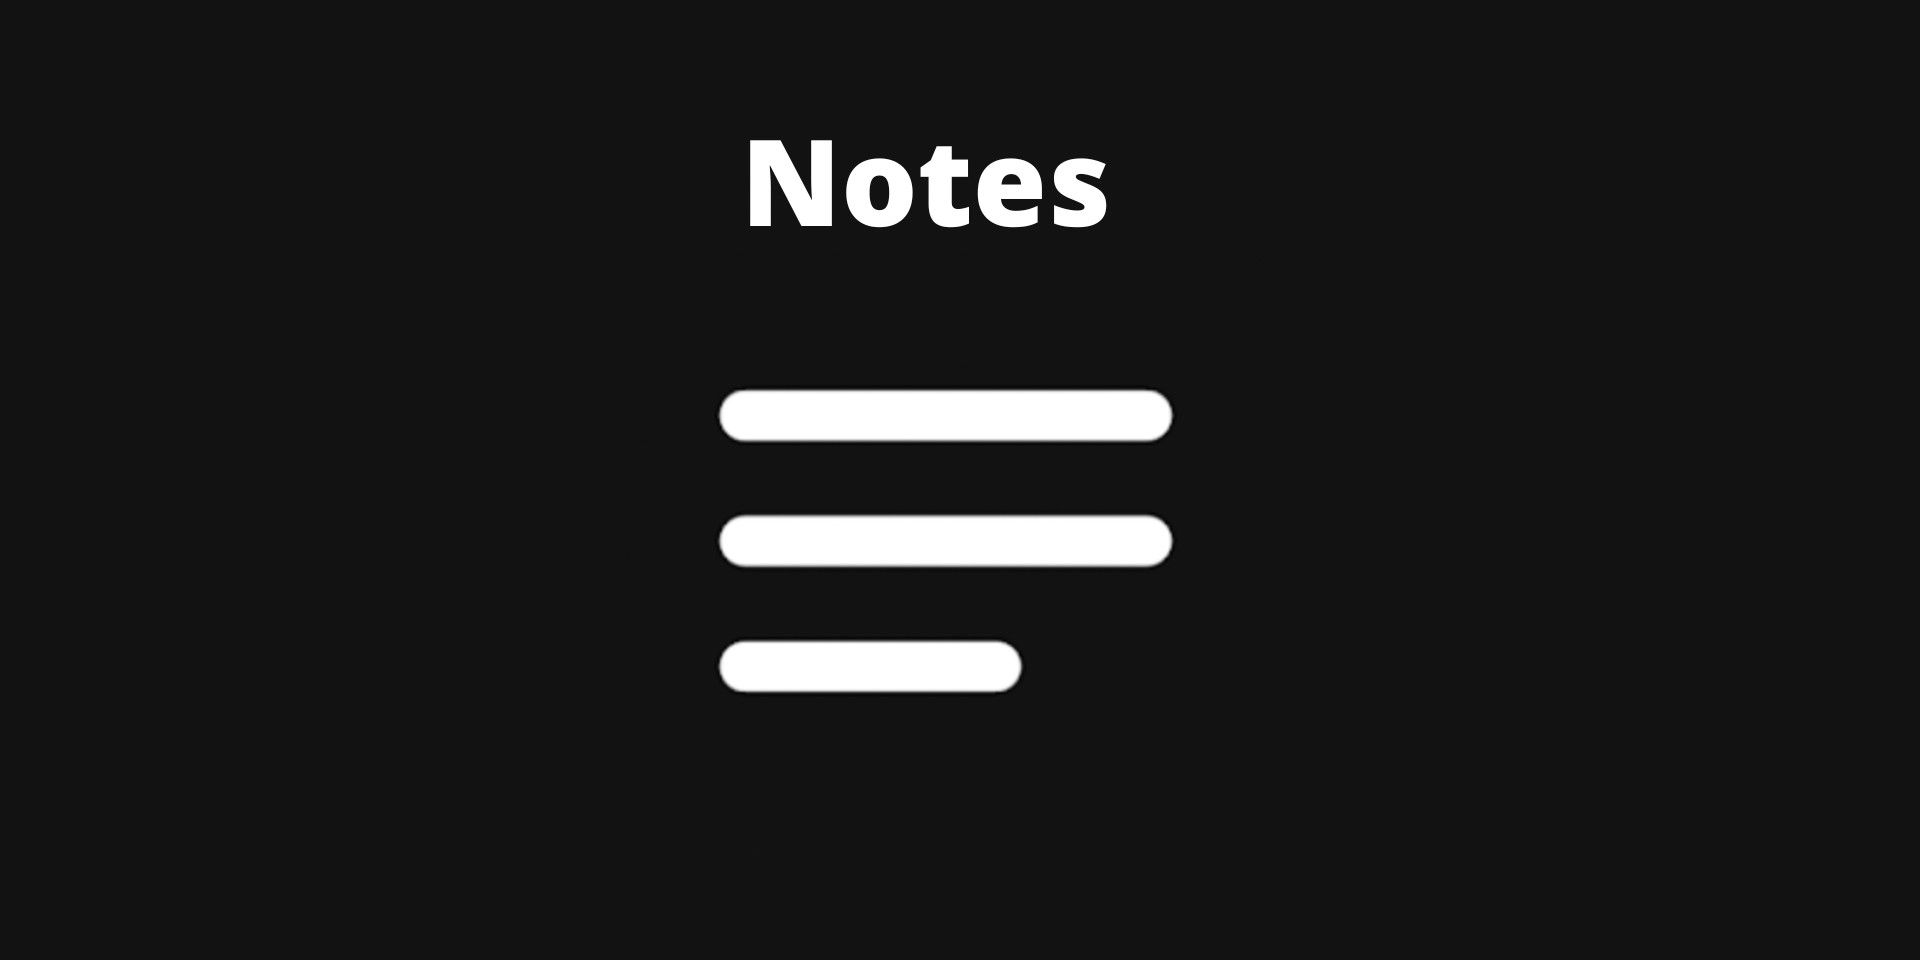 Esta aplicación te permite crear y fijar notas en la barra de notificaciones de Android